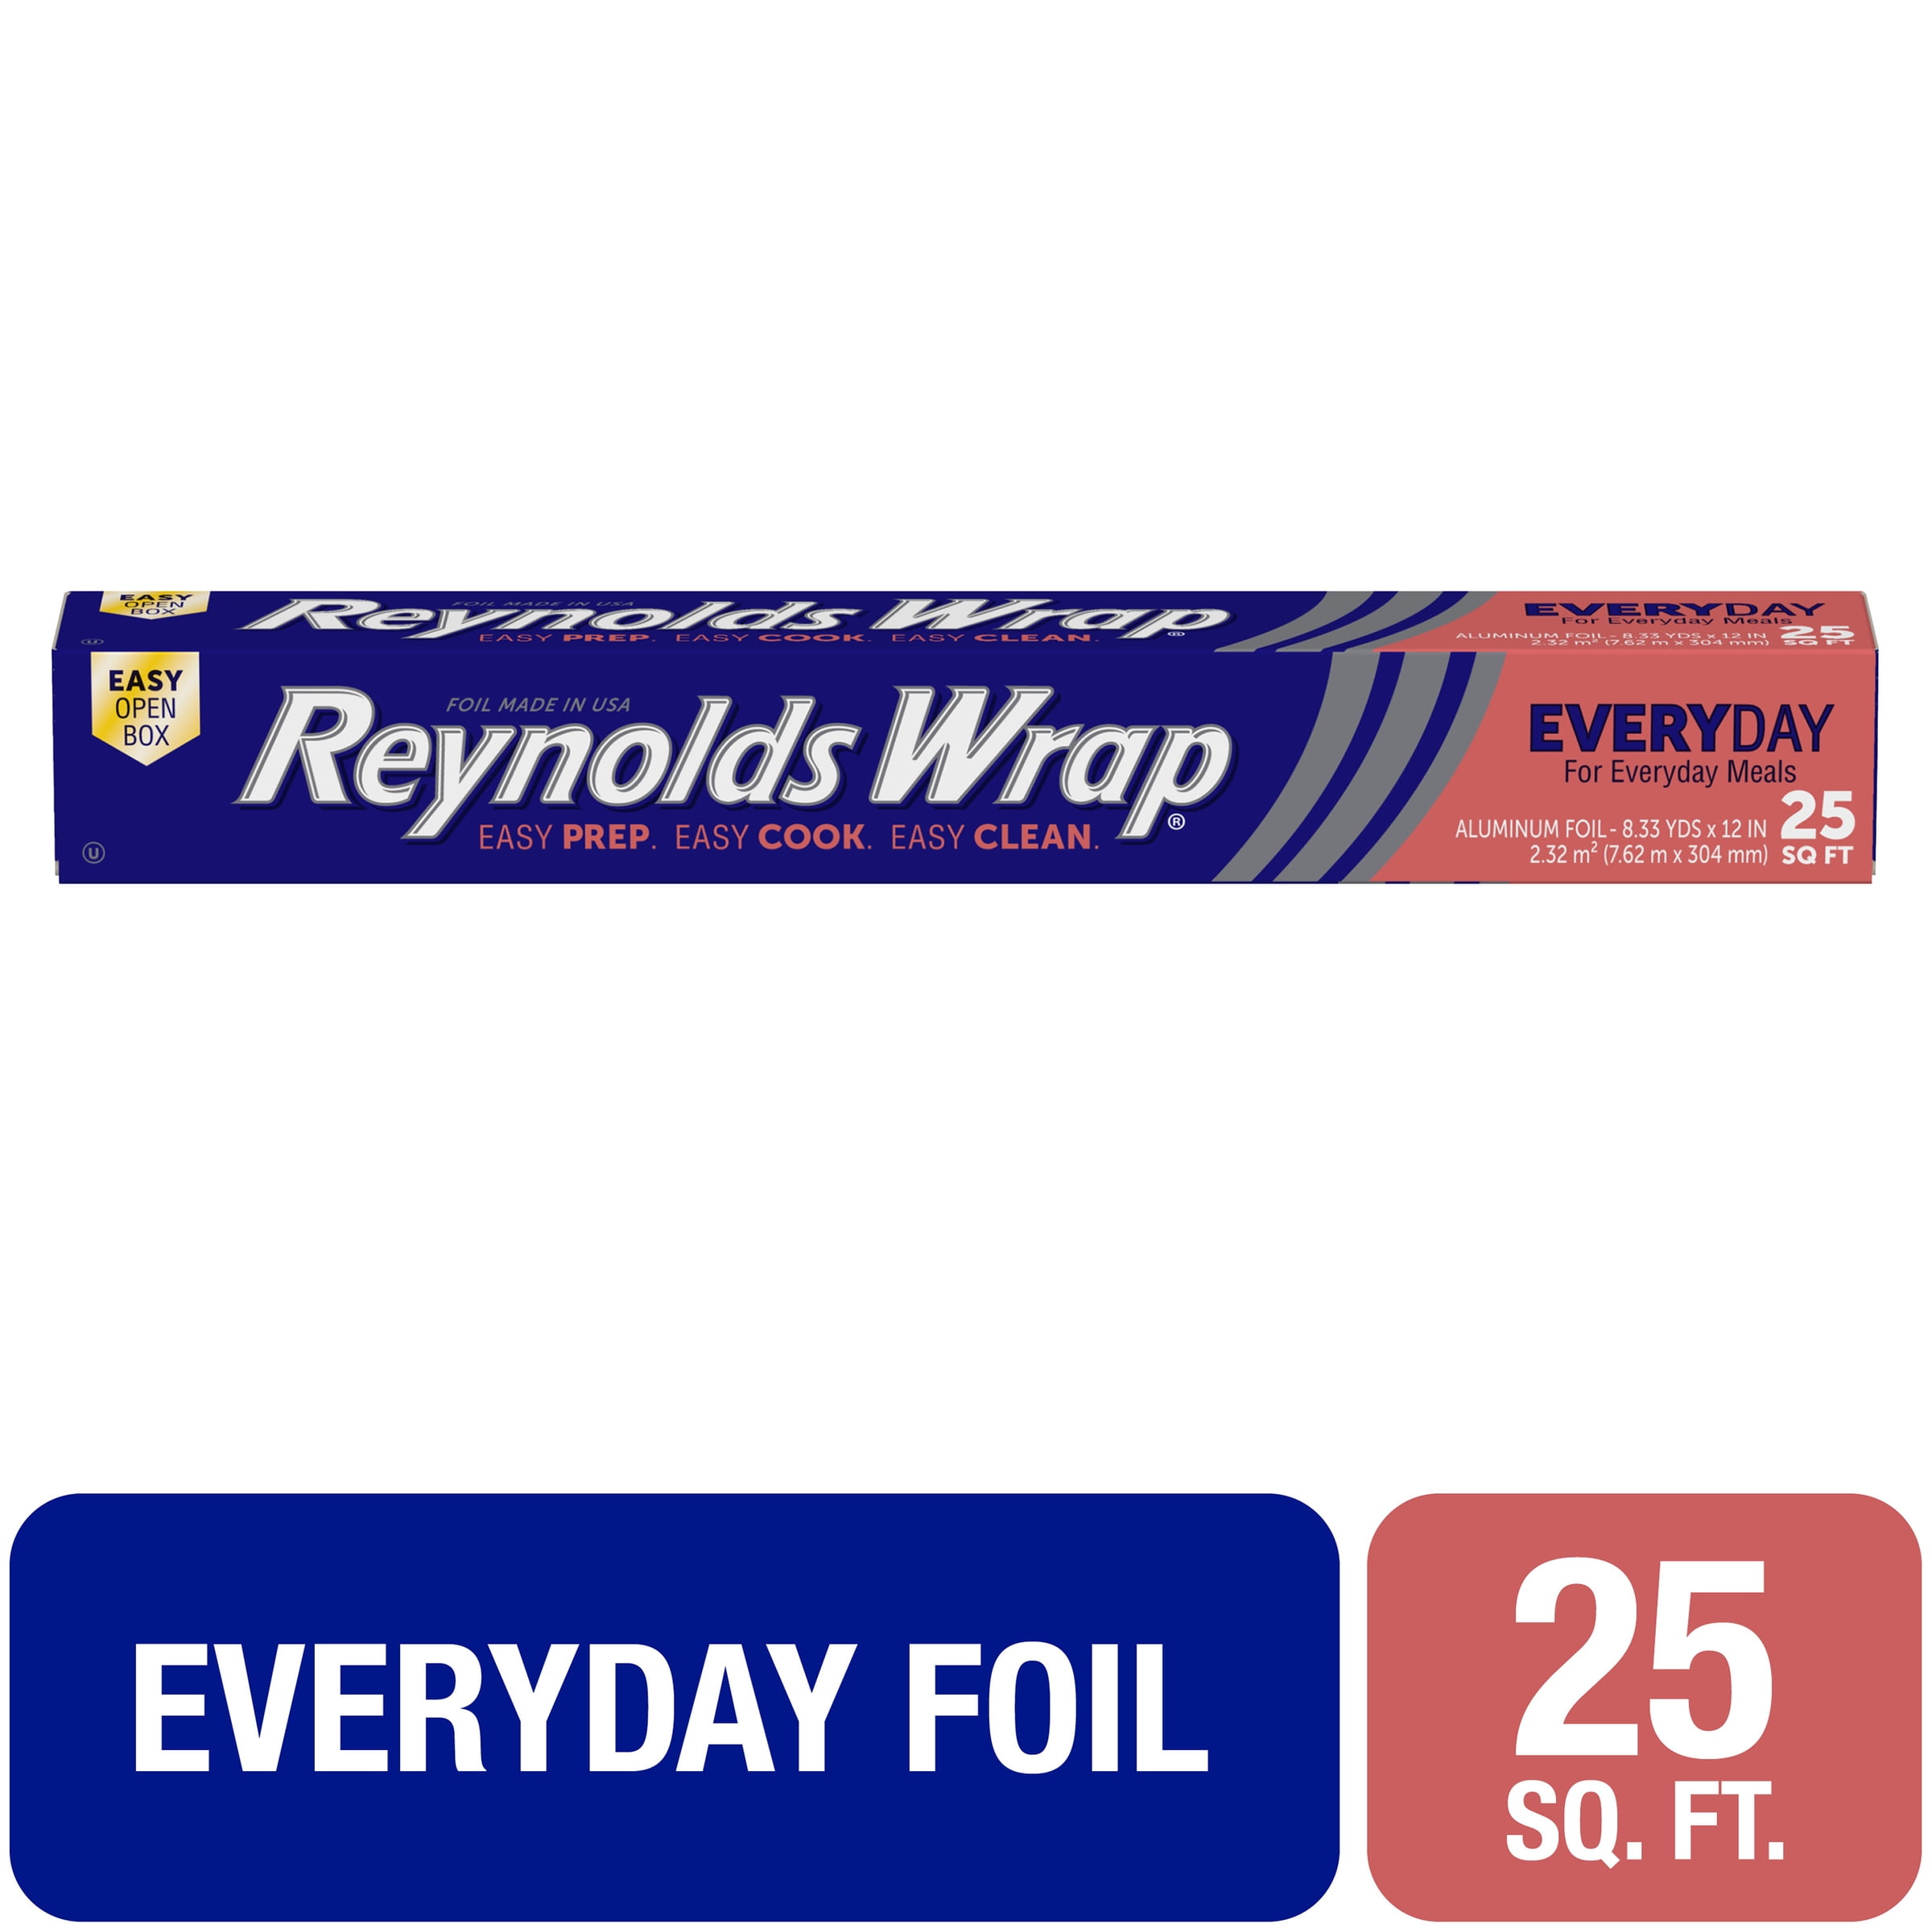 Standard Aluminum Foil Roll, 15 Width x 1000' Length - 1 Roll 